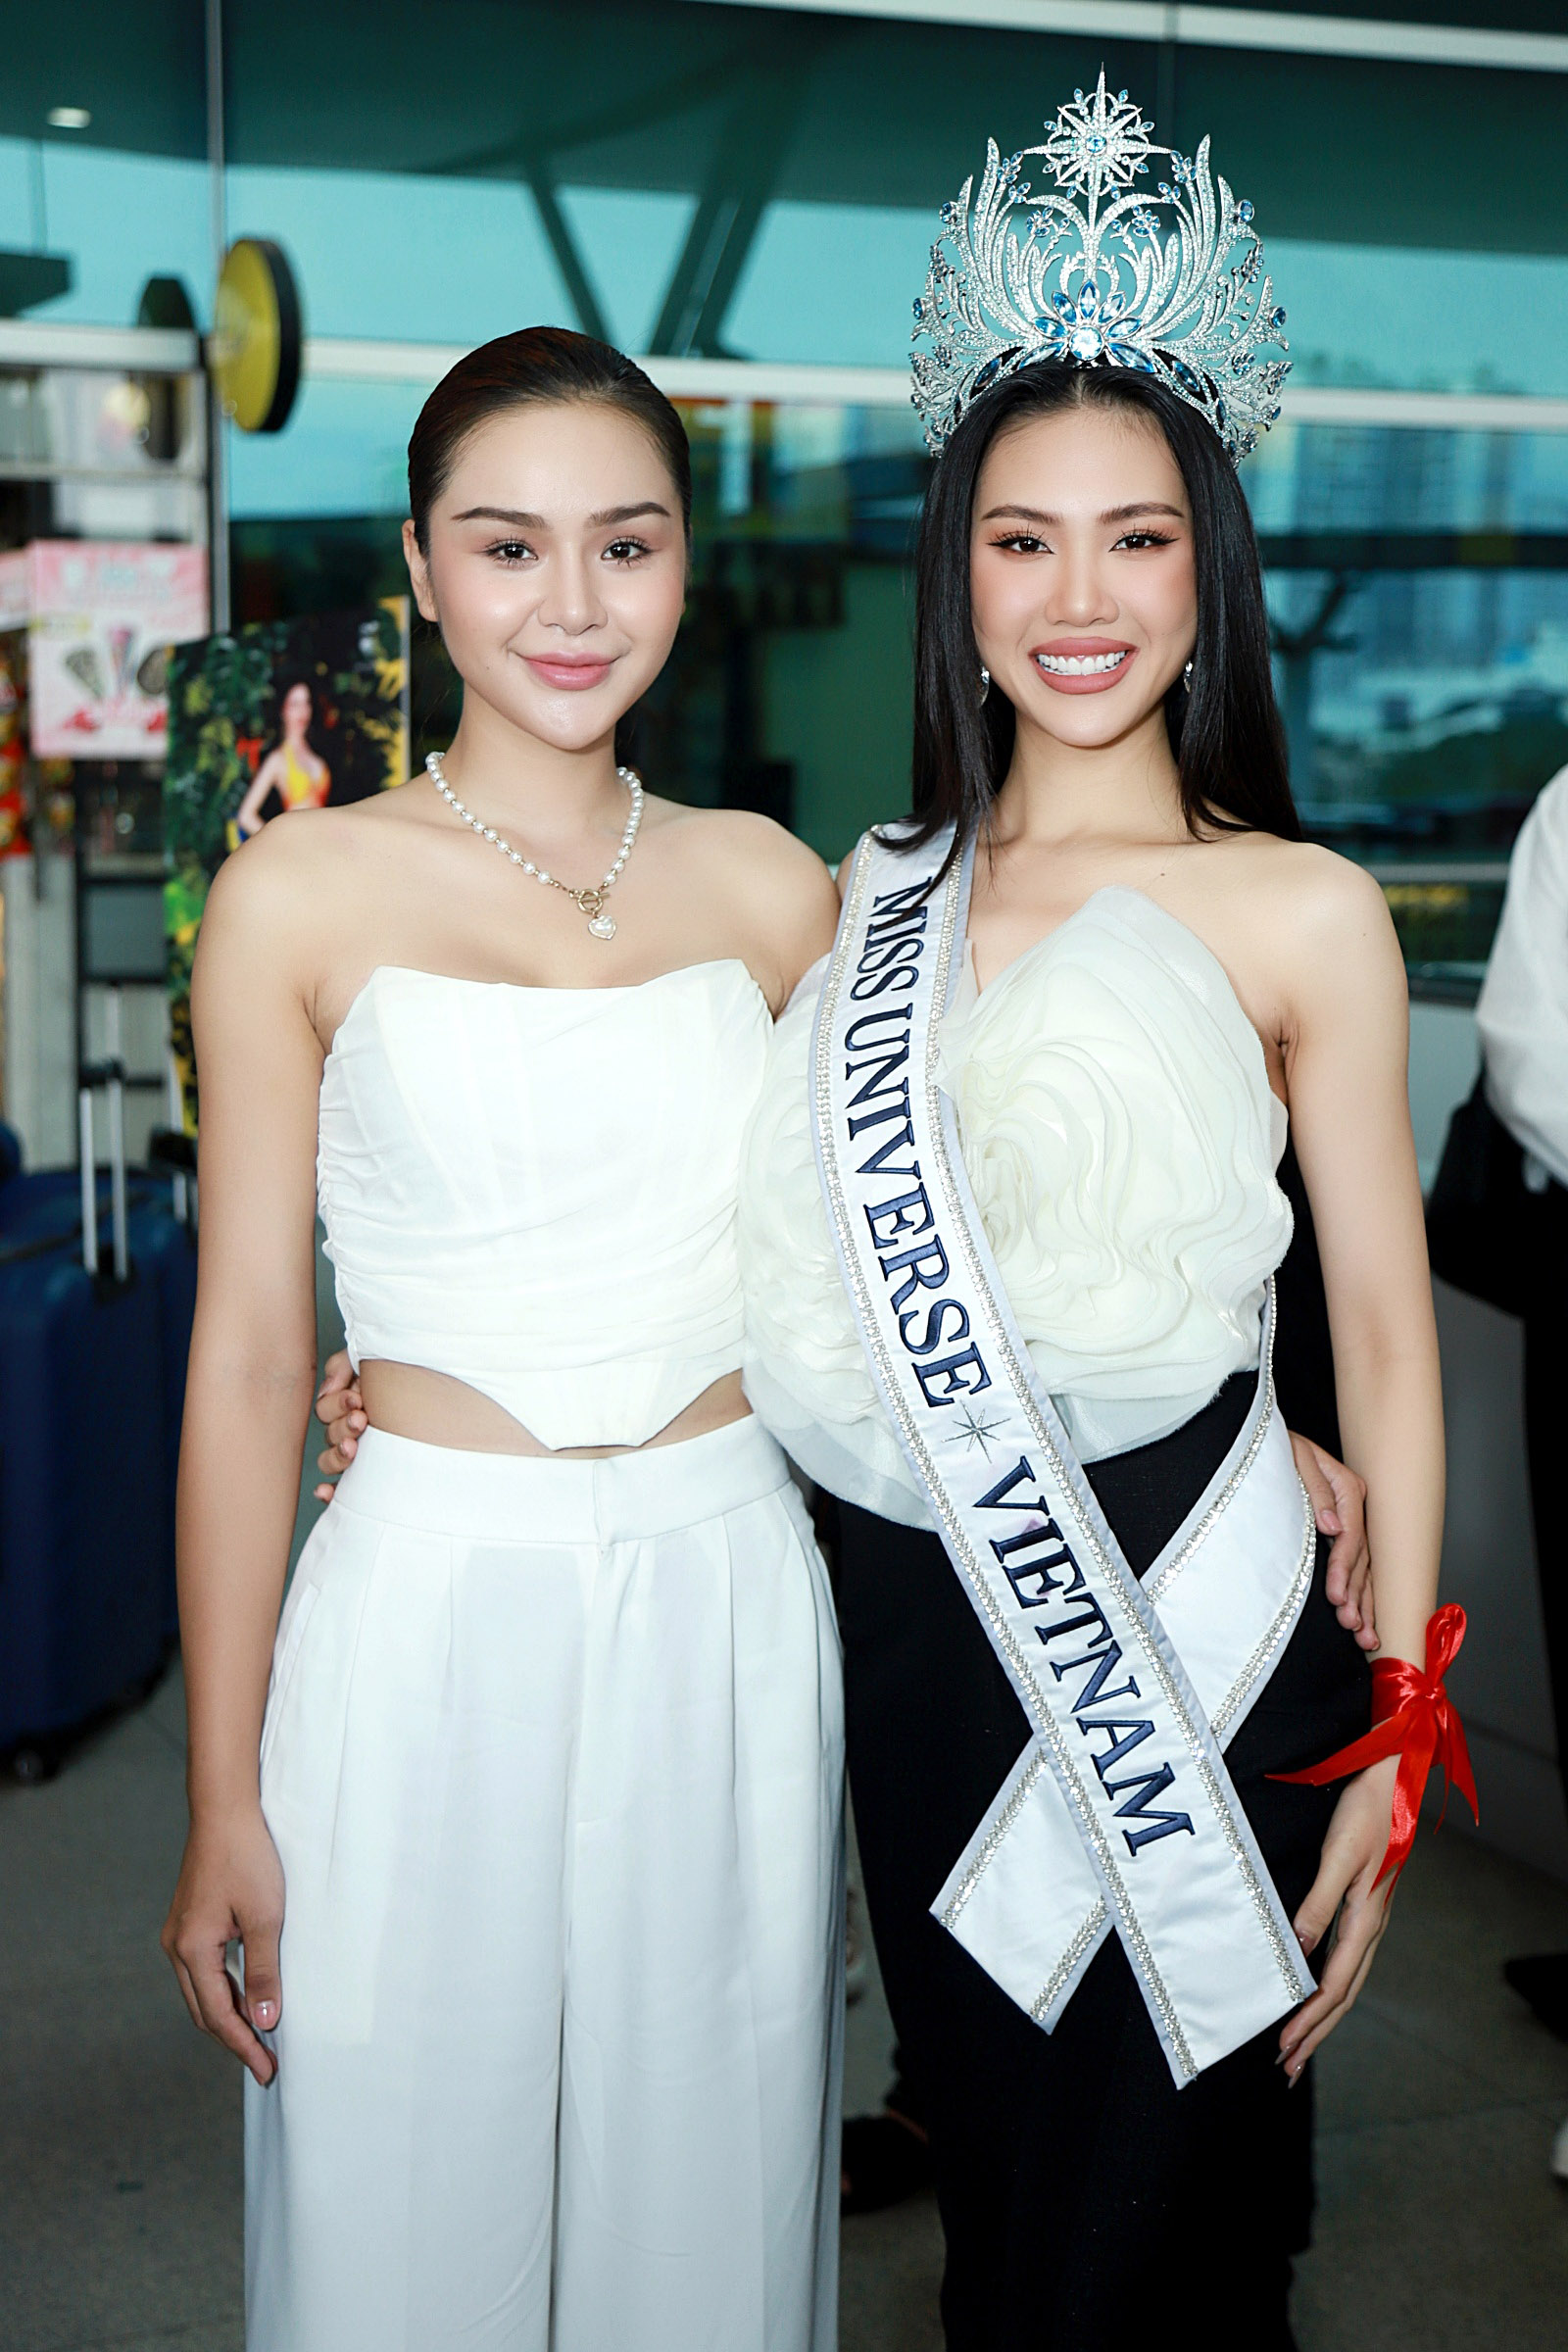 Bùi Quỳnh Hoa chính thức lên đường đi thi Miss Universe sau loạt lùm xùm, fan mang hoa ra sân bay tiễn - Ảnh 3.